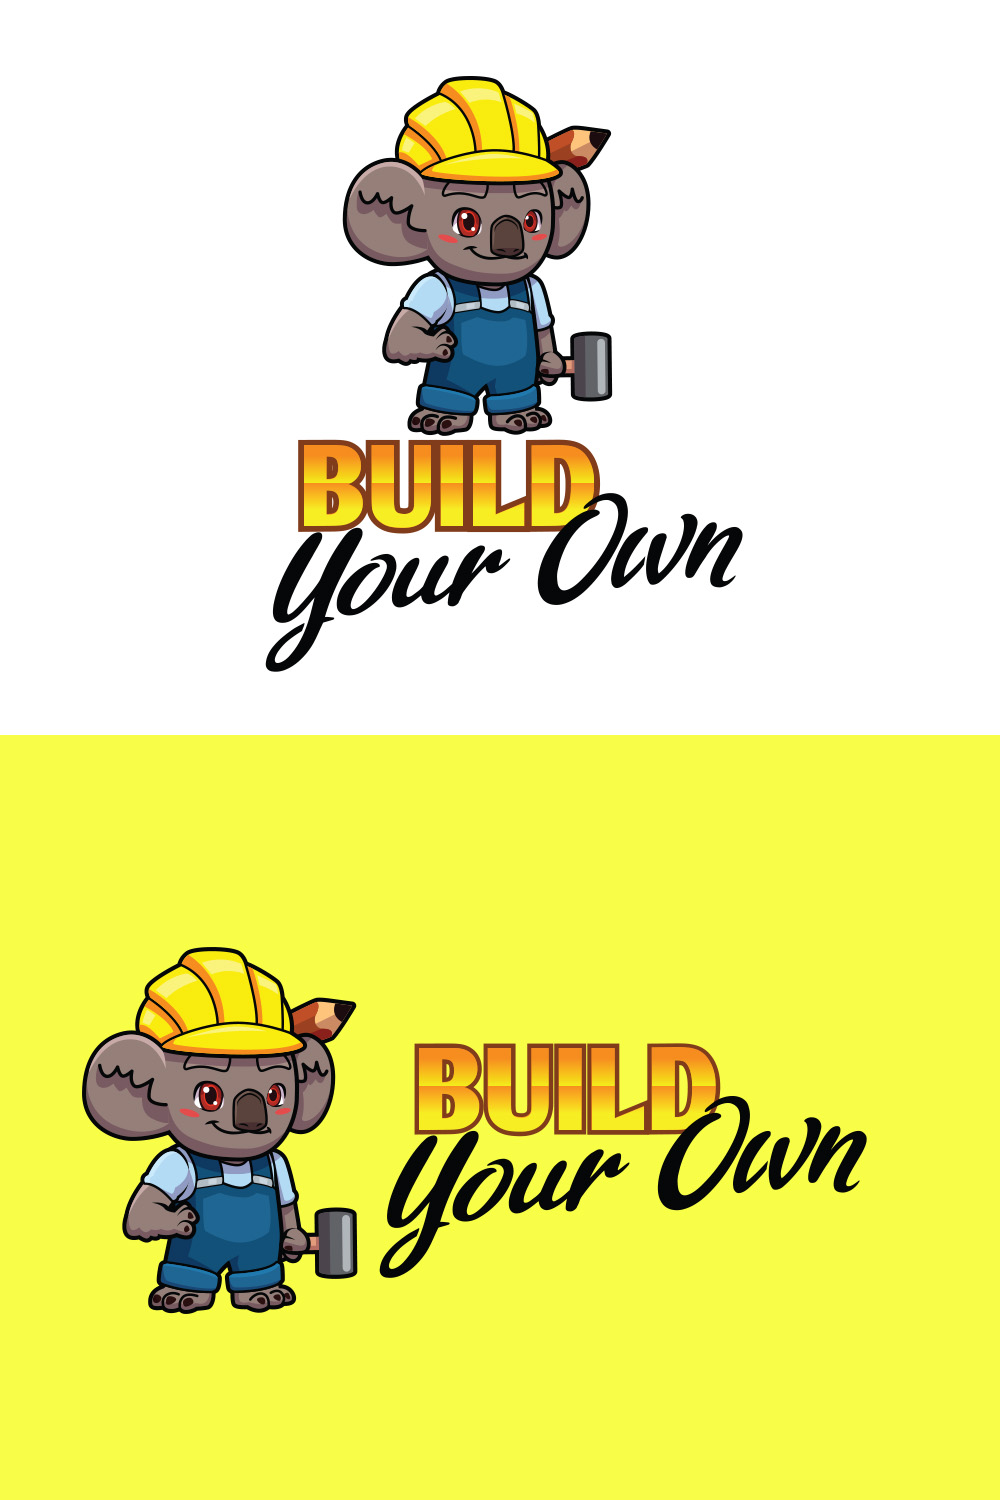 Koala Builder Character Mascot Logo pinterest preview image.